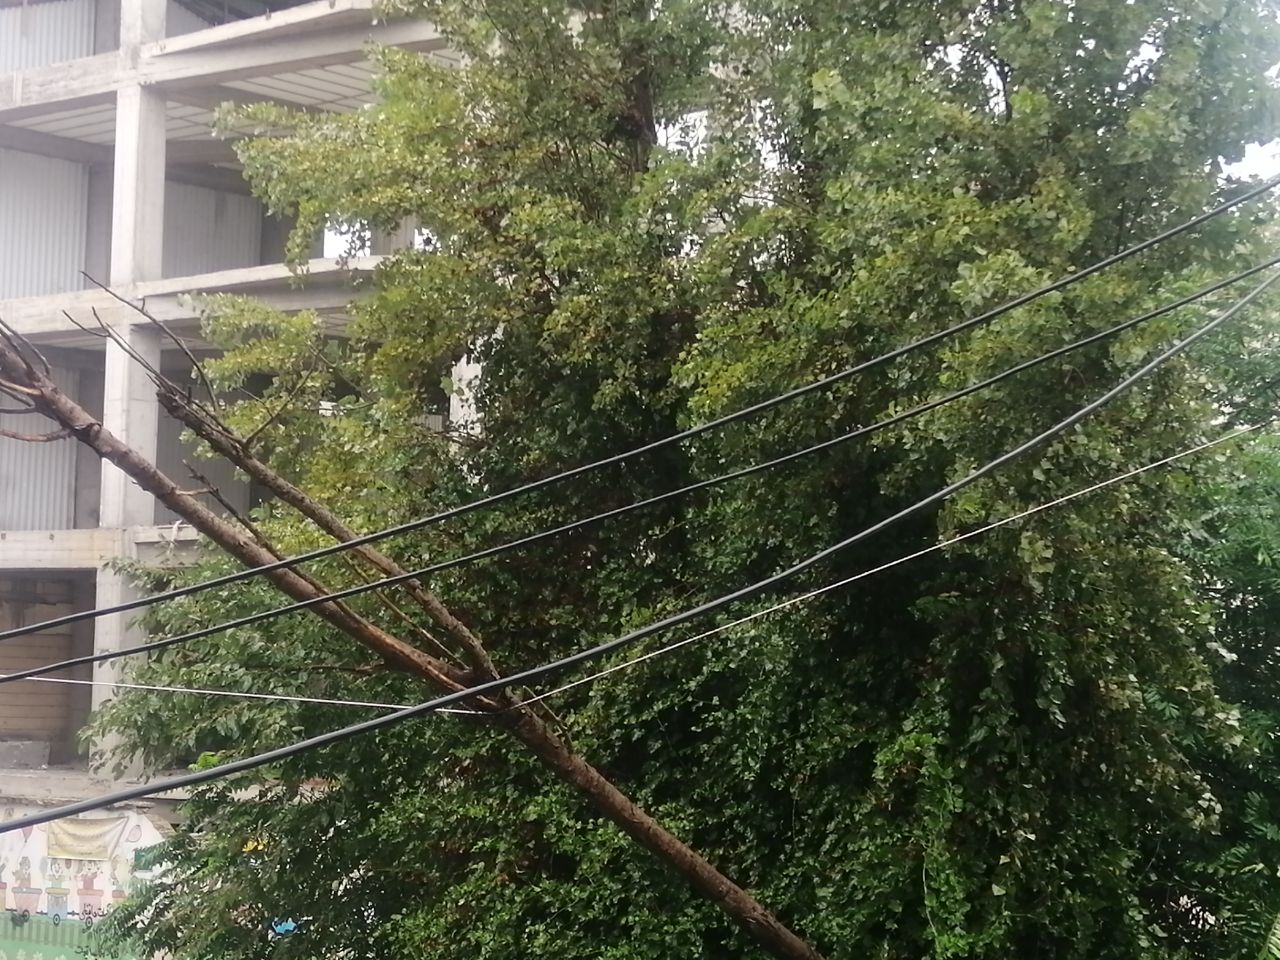 سقوط یک اصله درخت بر روی کابل برق در رشت